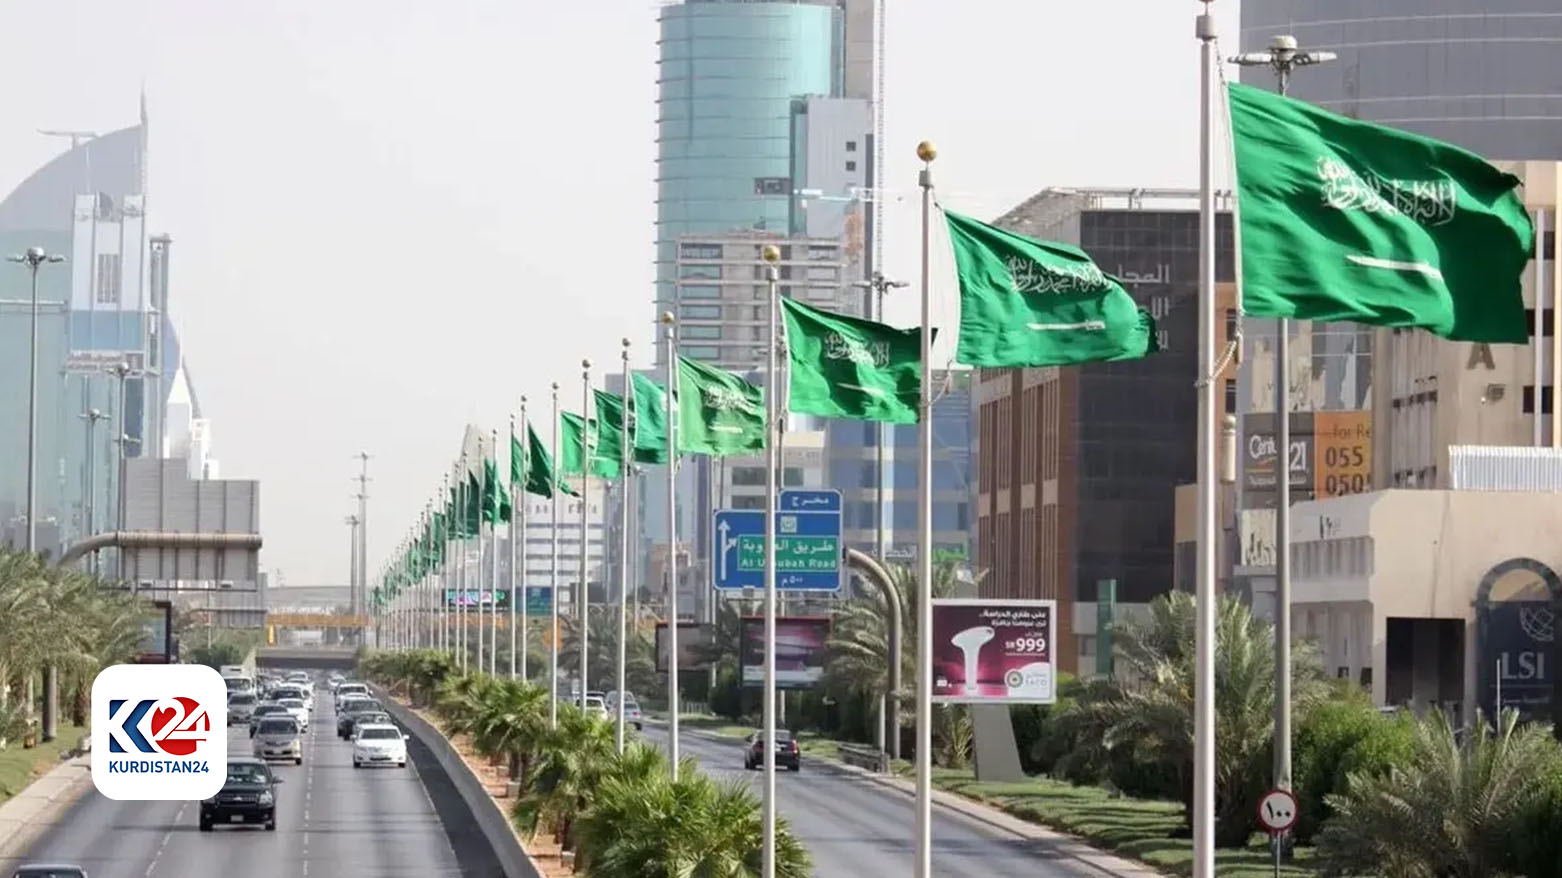 اجتماع تشاوري لوزراء خارجية عرب في الرياض بعد جولة بلينكن